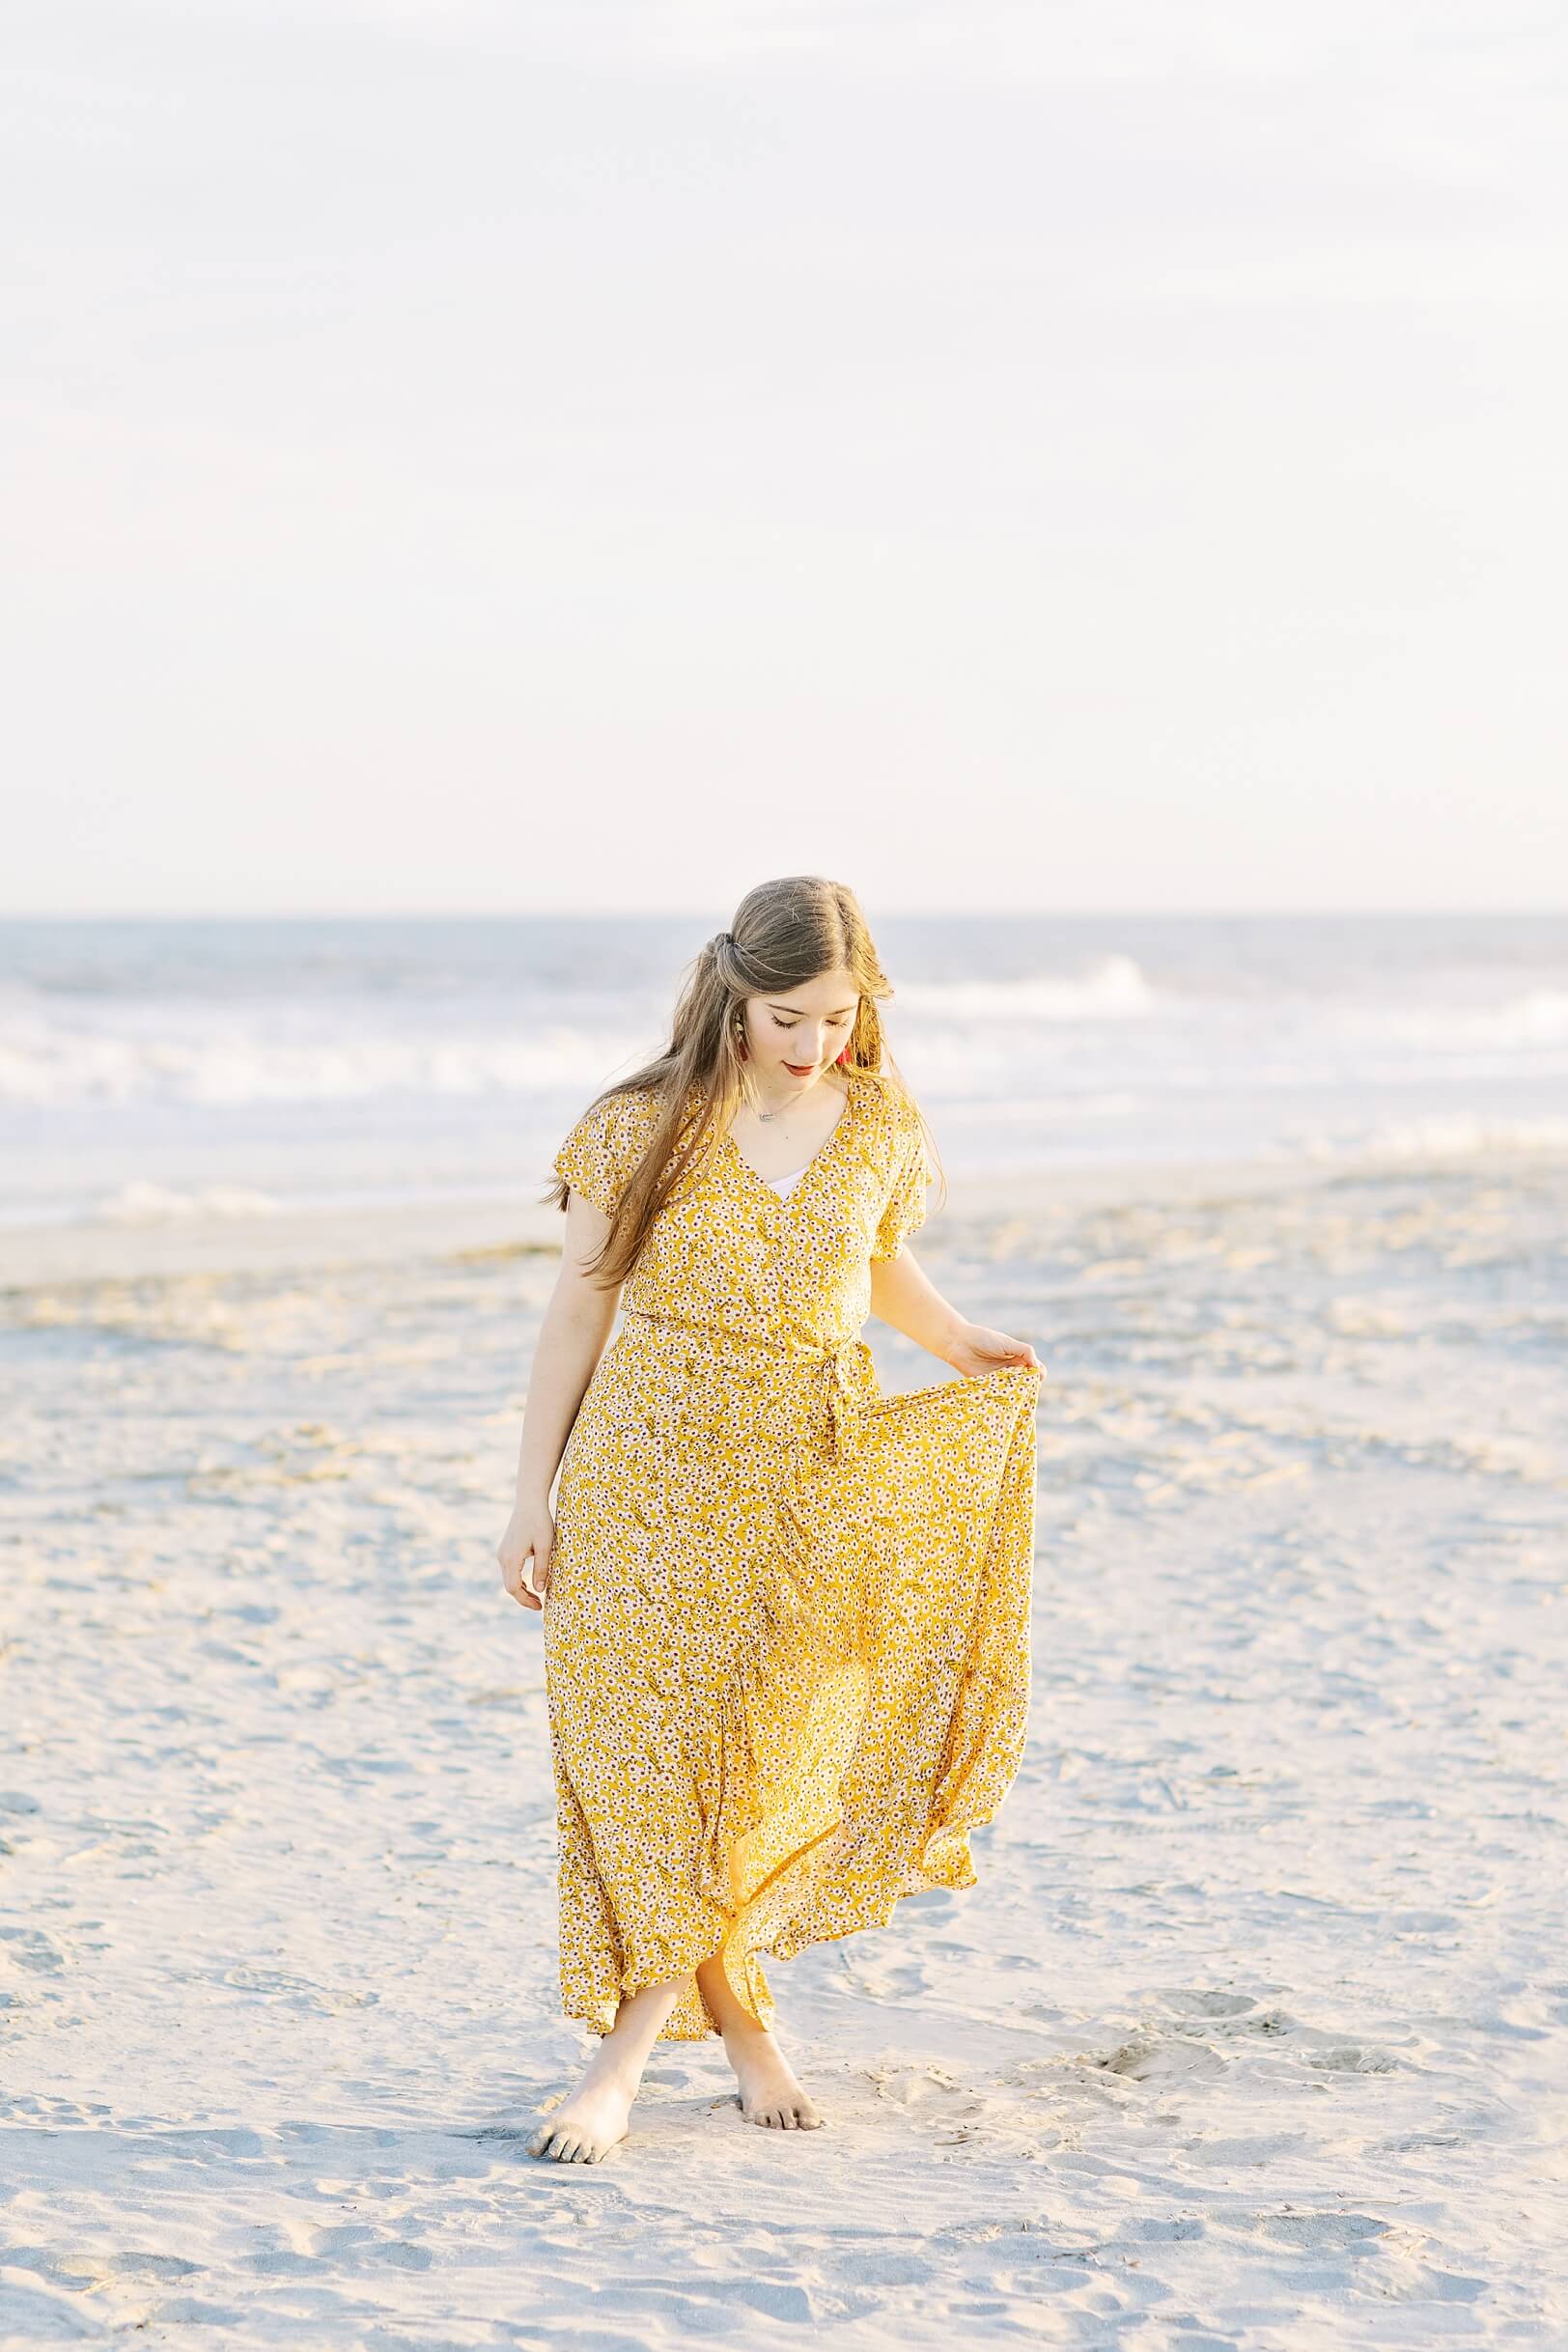 Folly Beach Pastel Sunset Photoshoot | Kaitlin Scott Photography